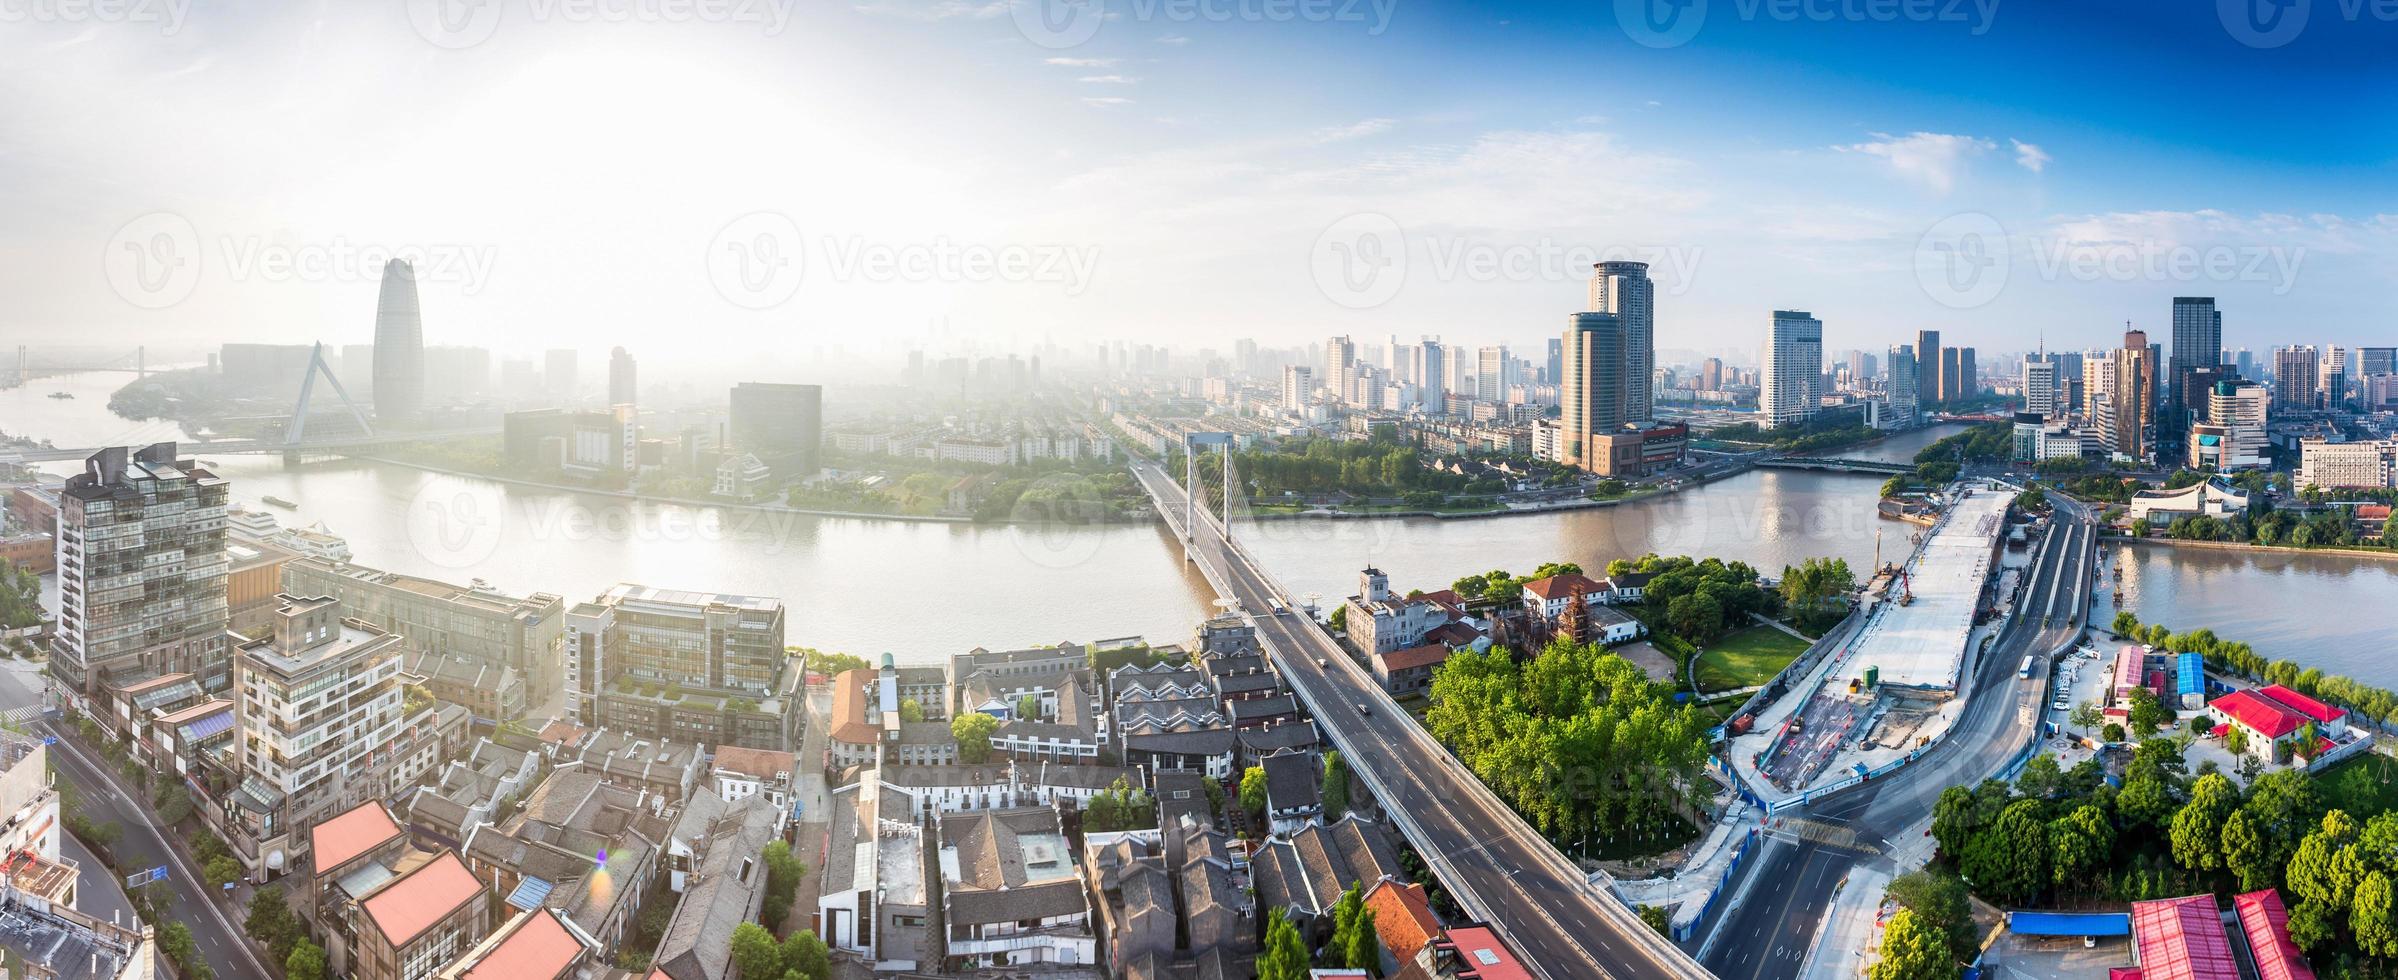 vista panoramica dall'alto del paesaggio urbano sulla riva del fiume foto